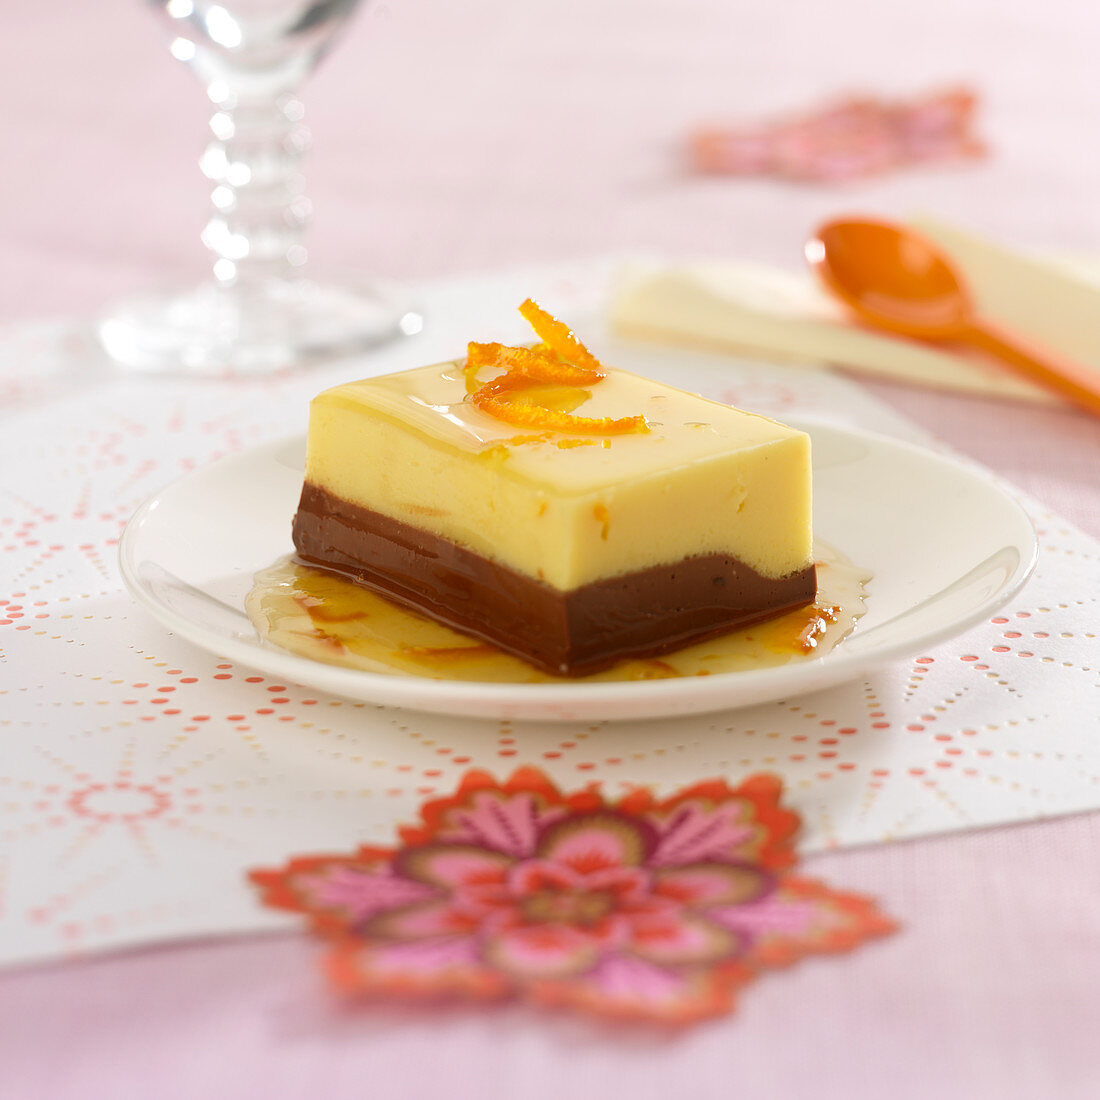 Zweischichtige Schokoladen-Orangencreme als Dessertschnitte